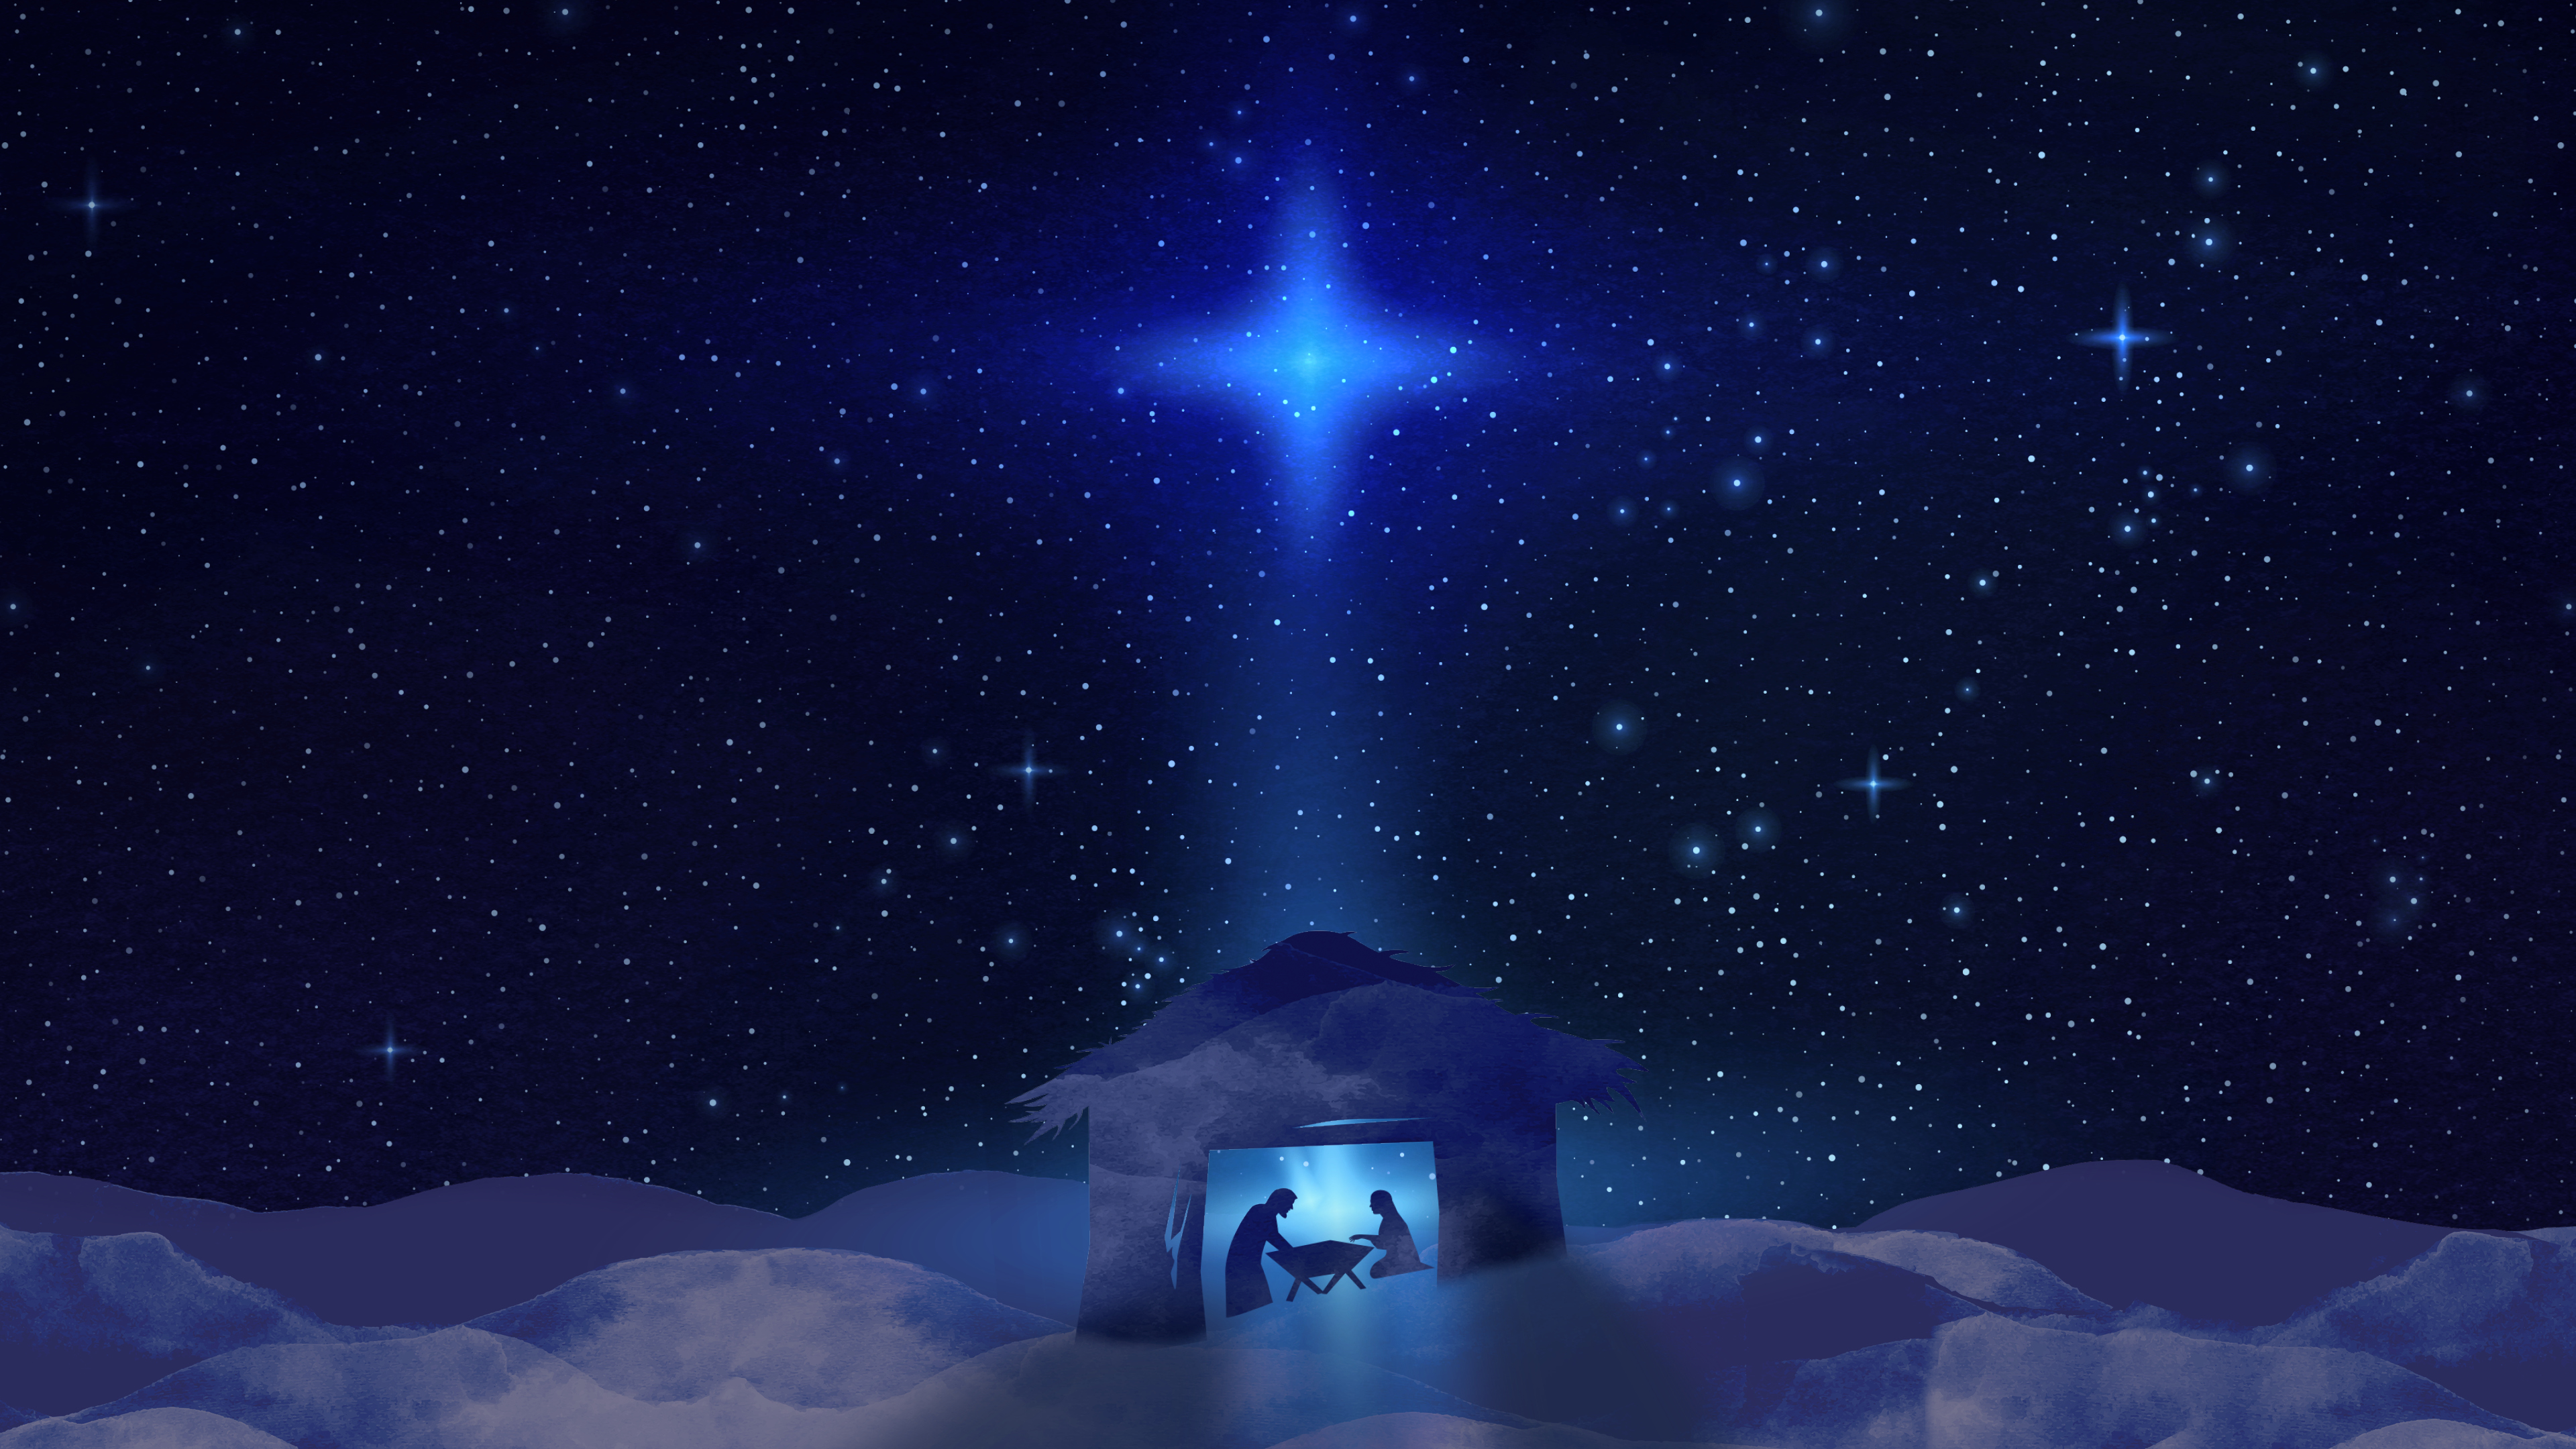 The manger nativity scene